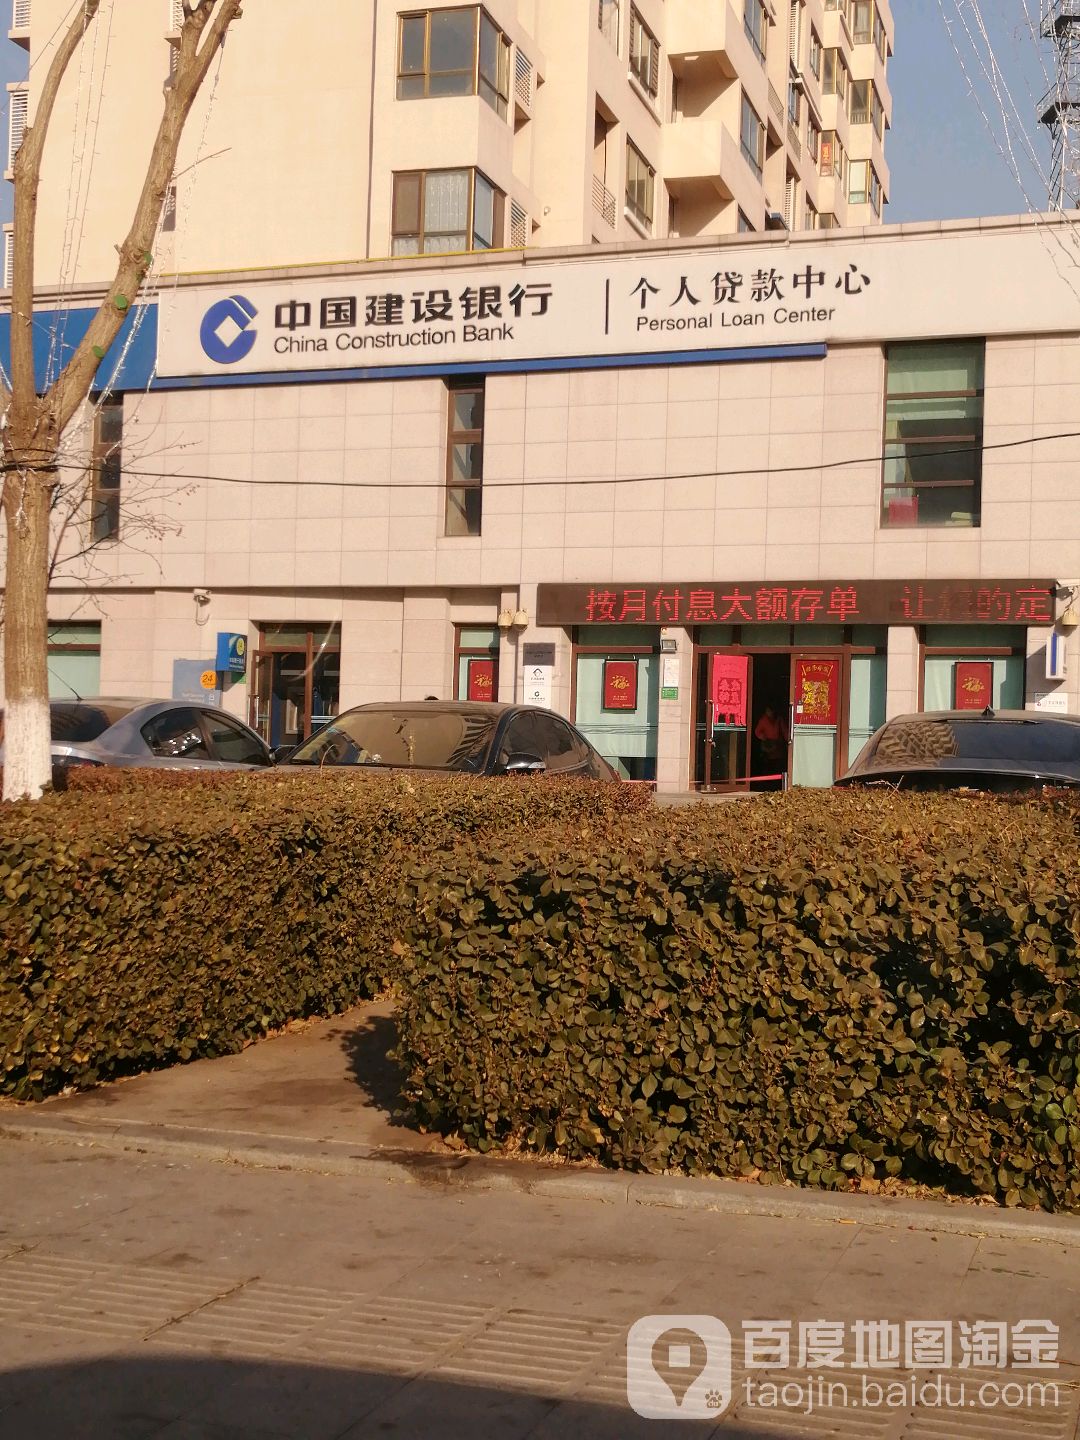 中中国设银行个人贷款中心